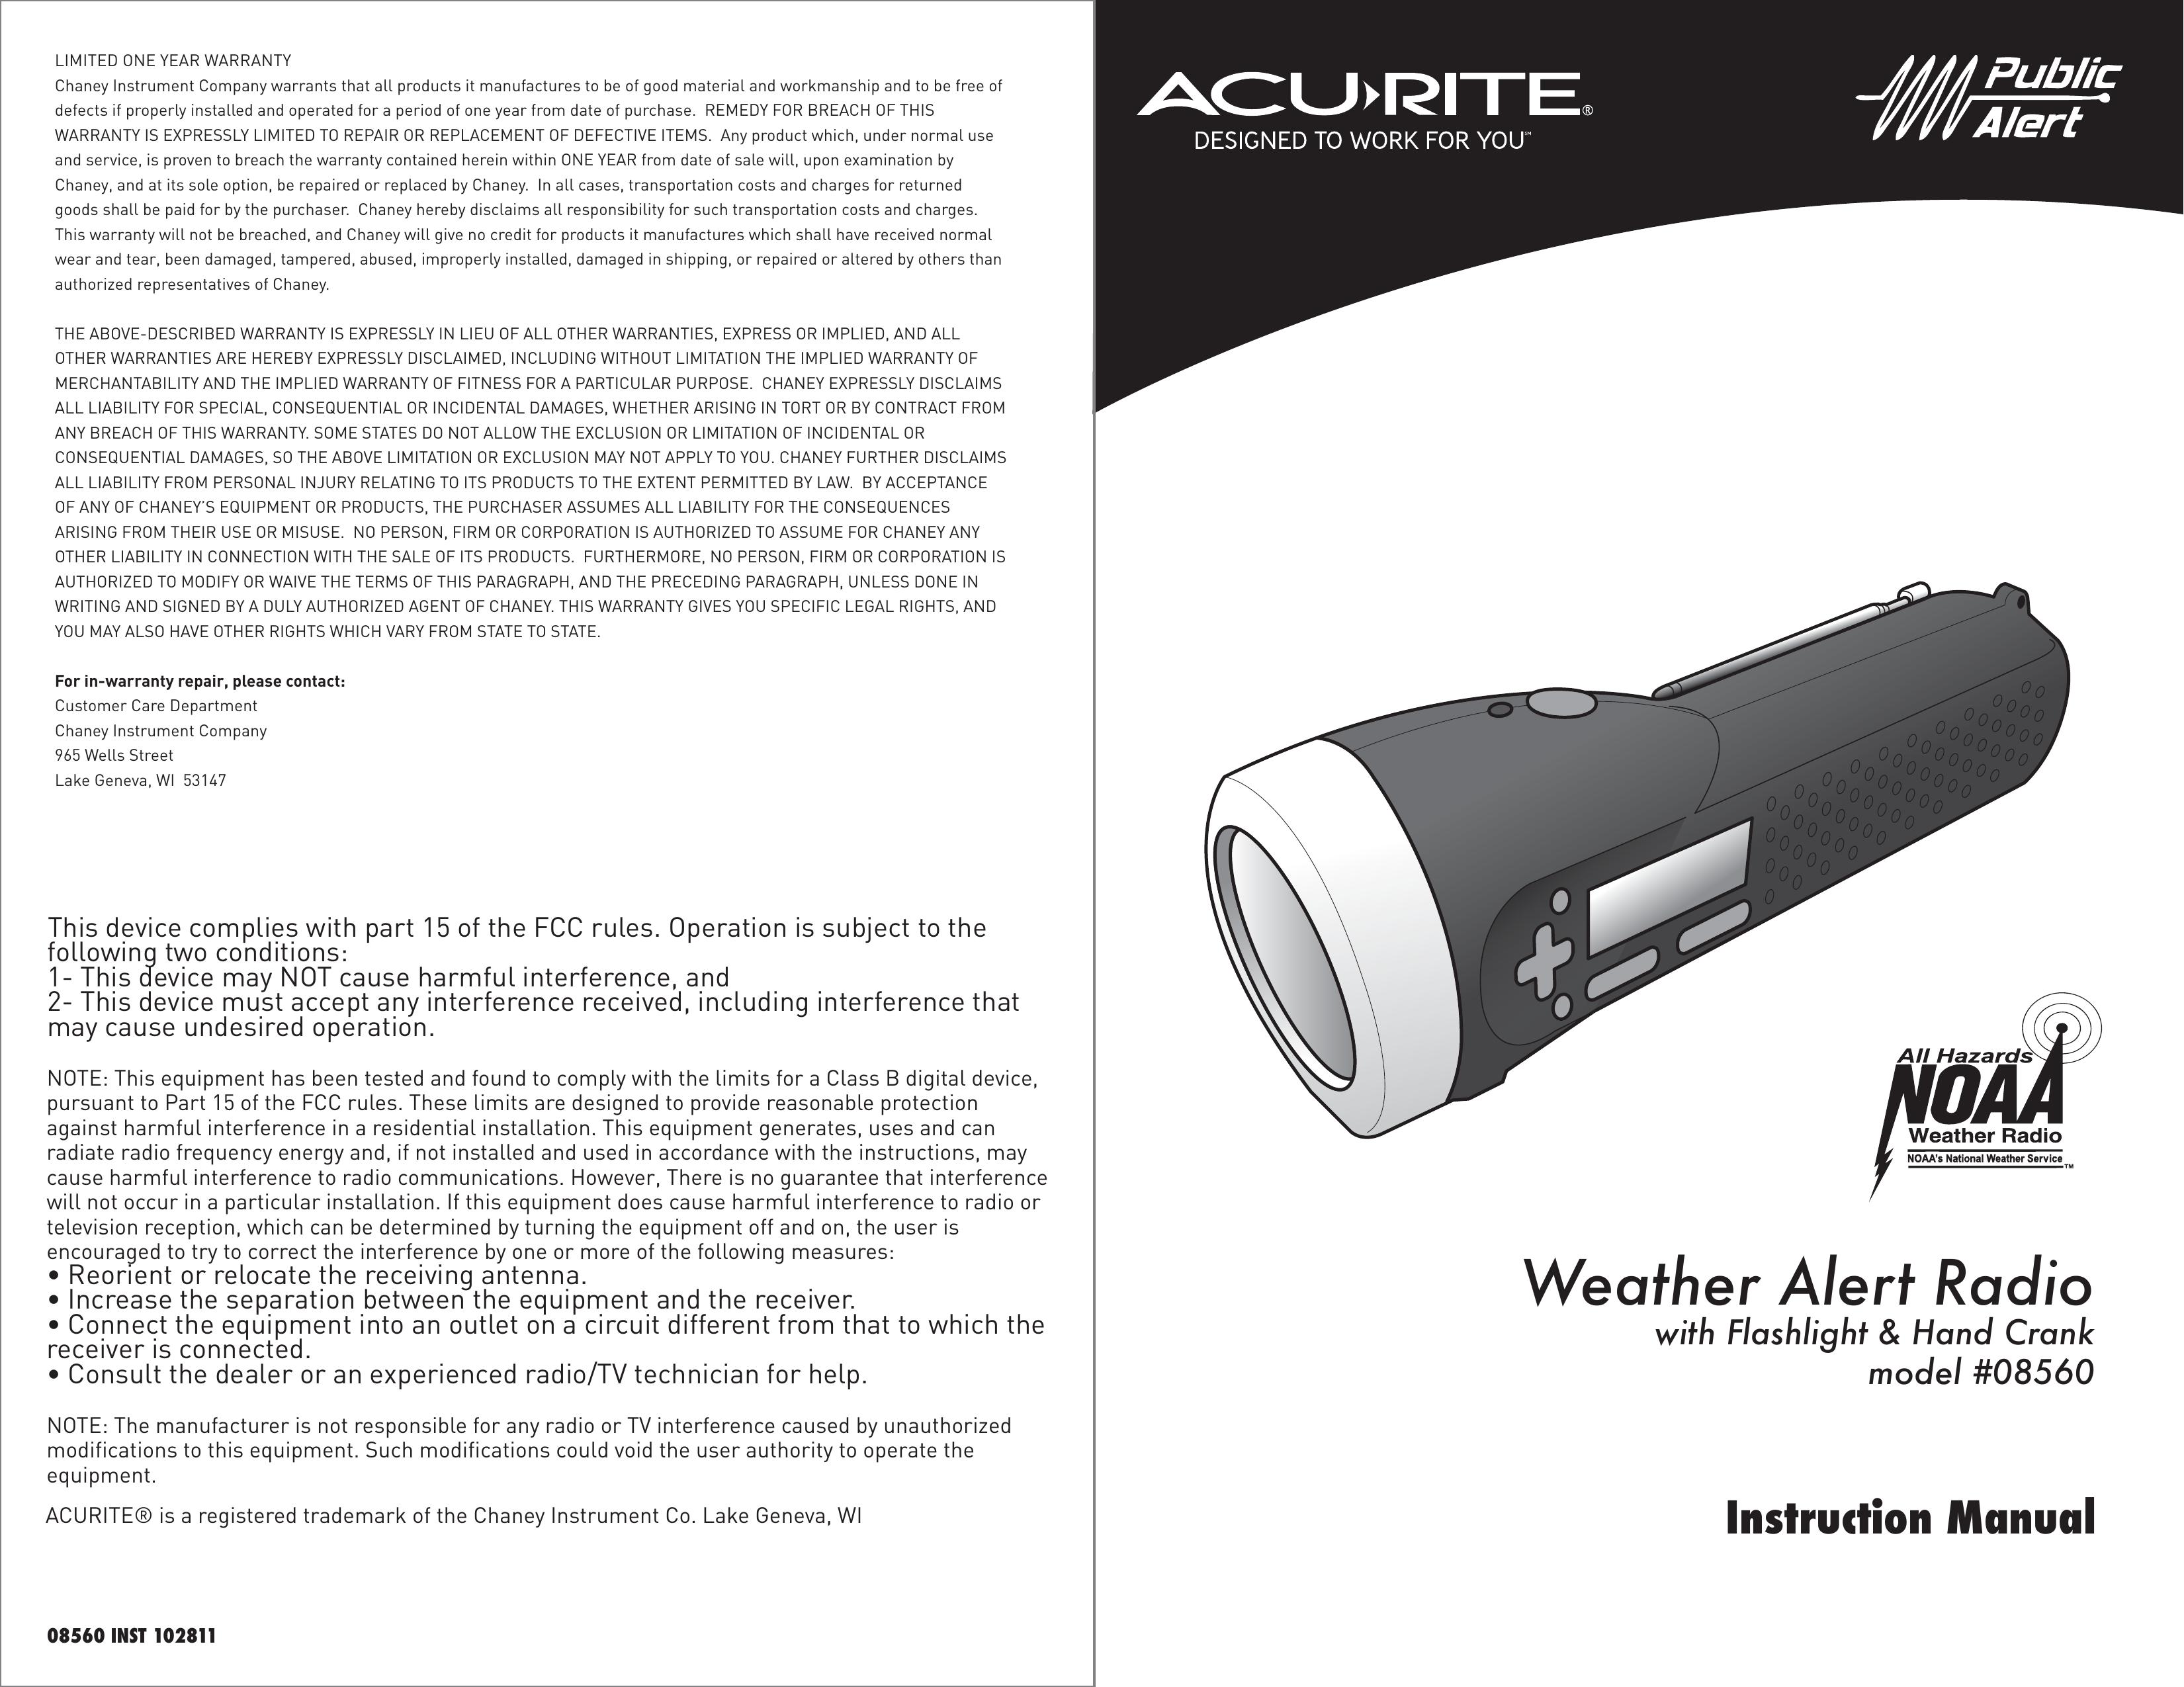 Acu-Rite #08560 Weather Radio User Manual